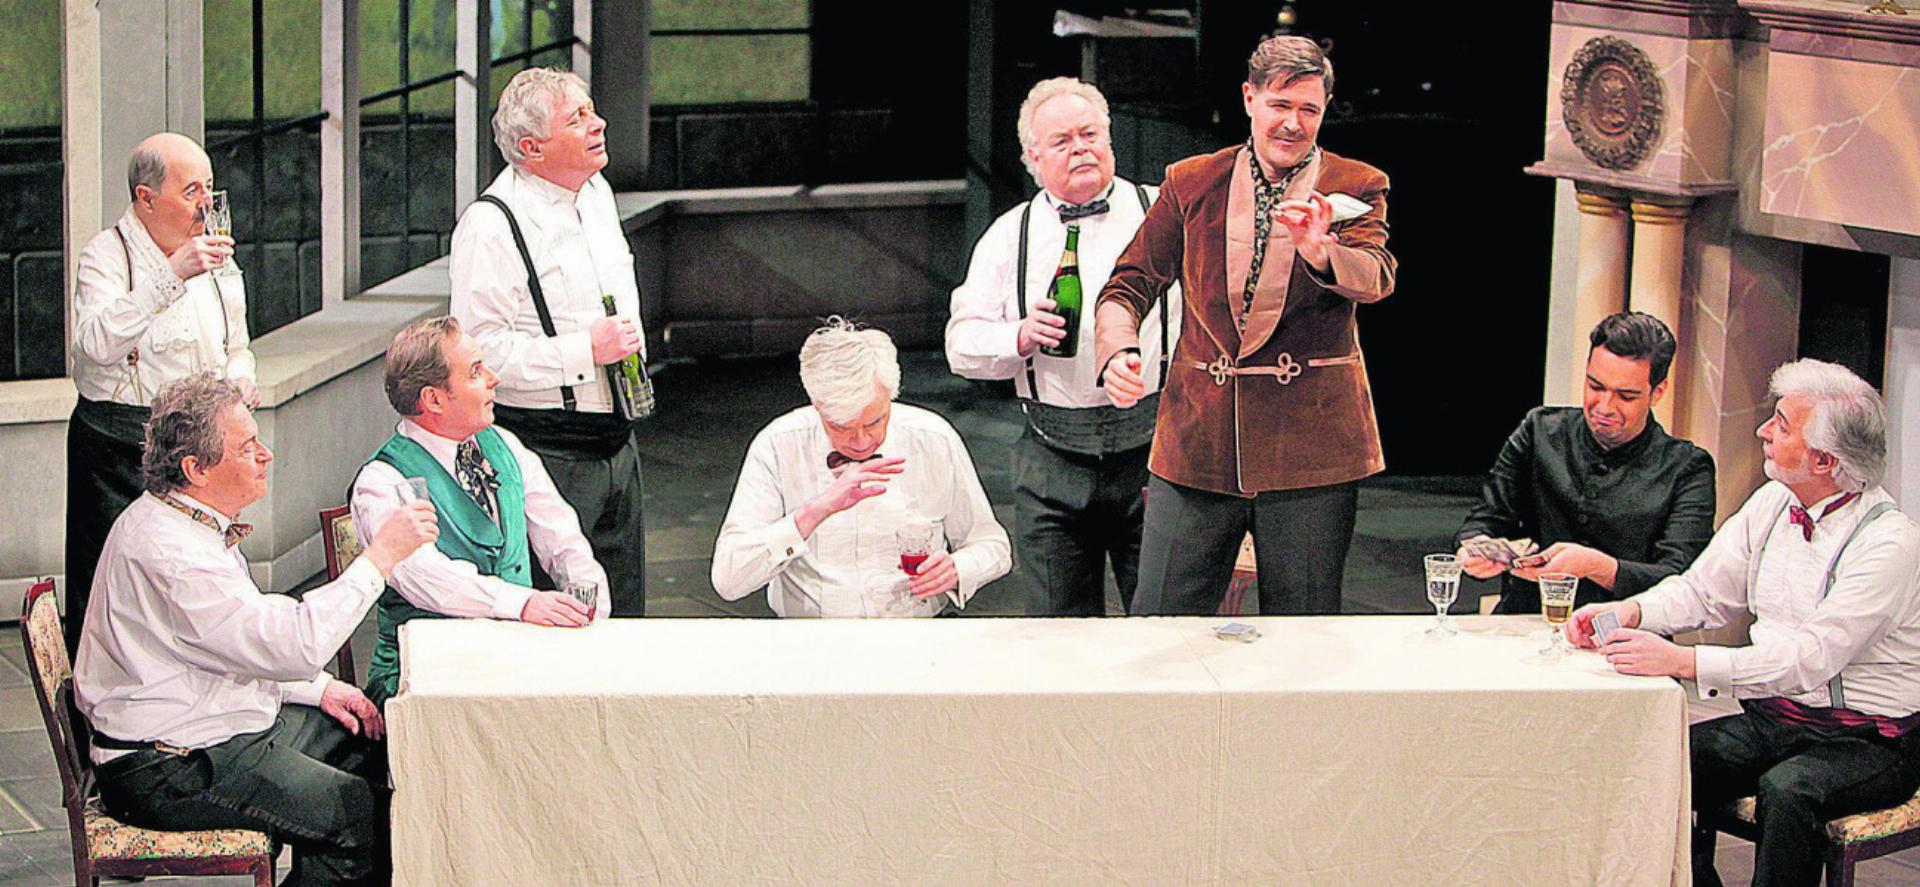 Noch läuft die gemütliche Runde mit Wein und Kartenspiel auf dem Gut von Graf Bolo (Simon Witzig, dritter von rechts). Fotos: zVg